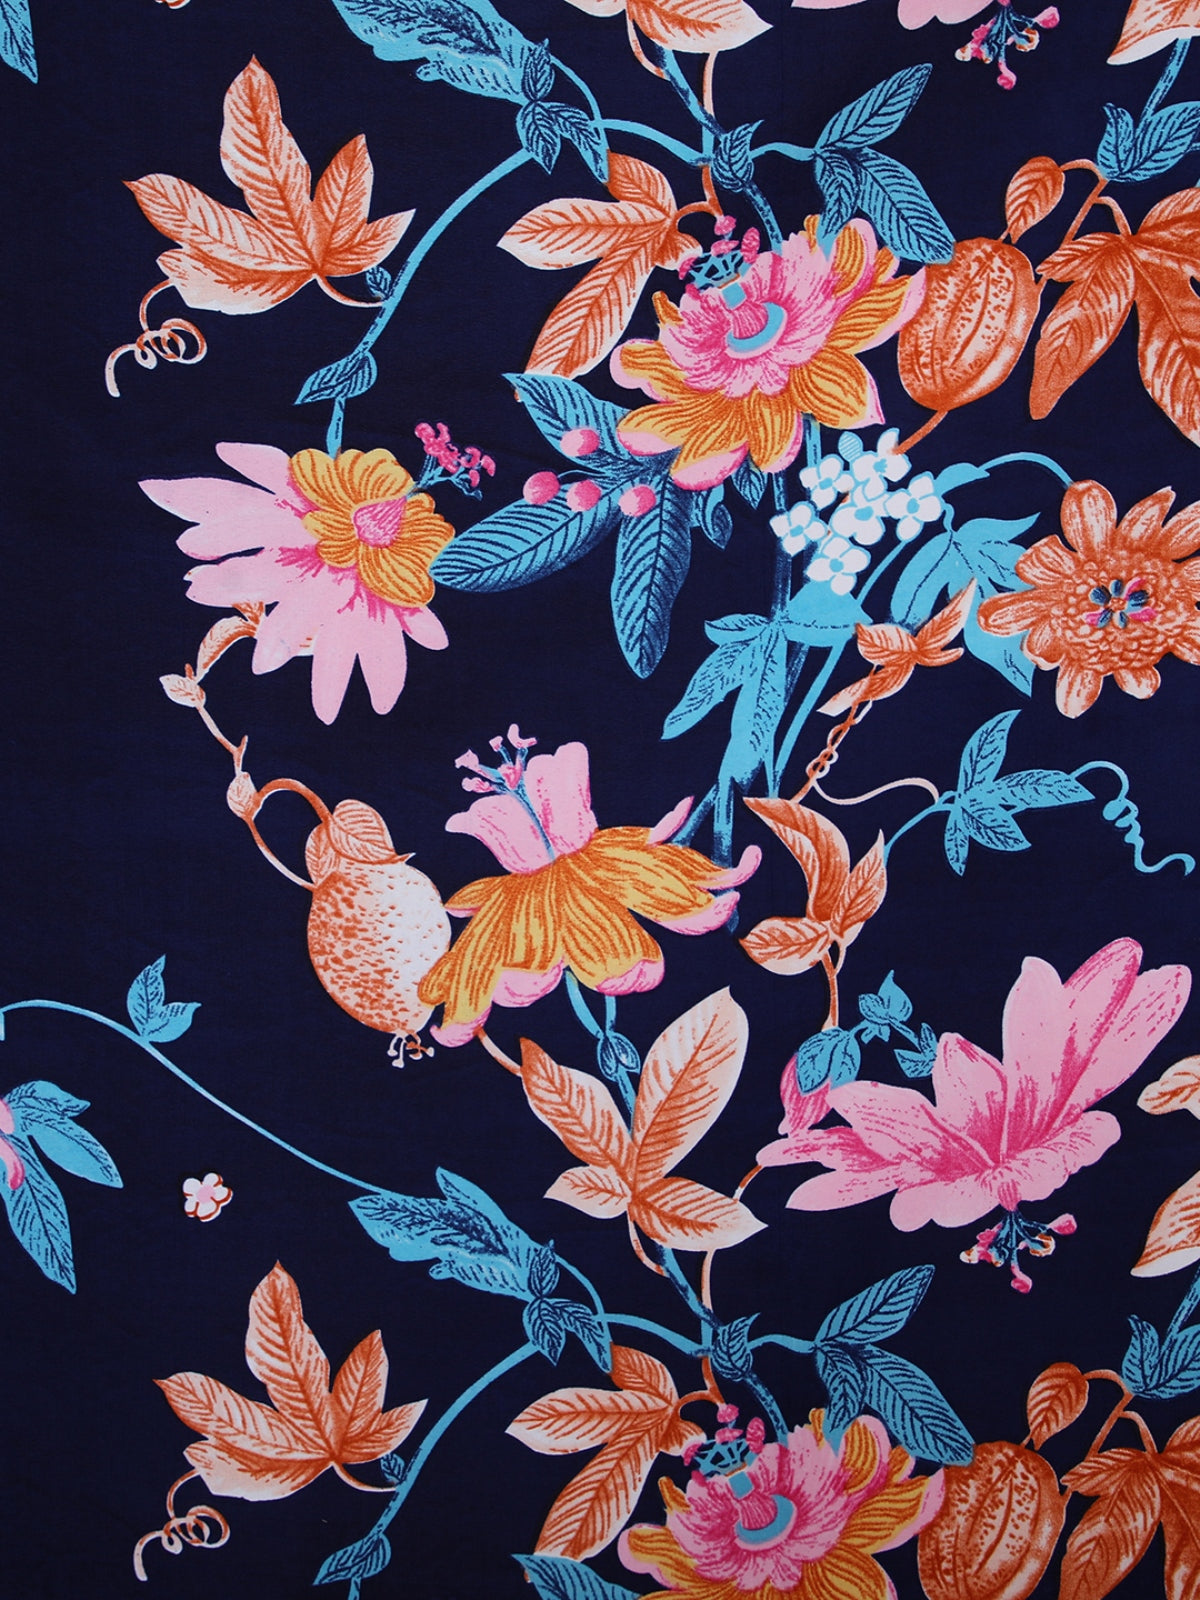 Royal Blue Floral Patterned King Size Cotton Bedding Set